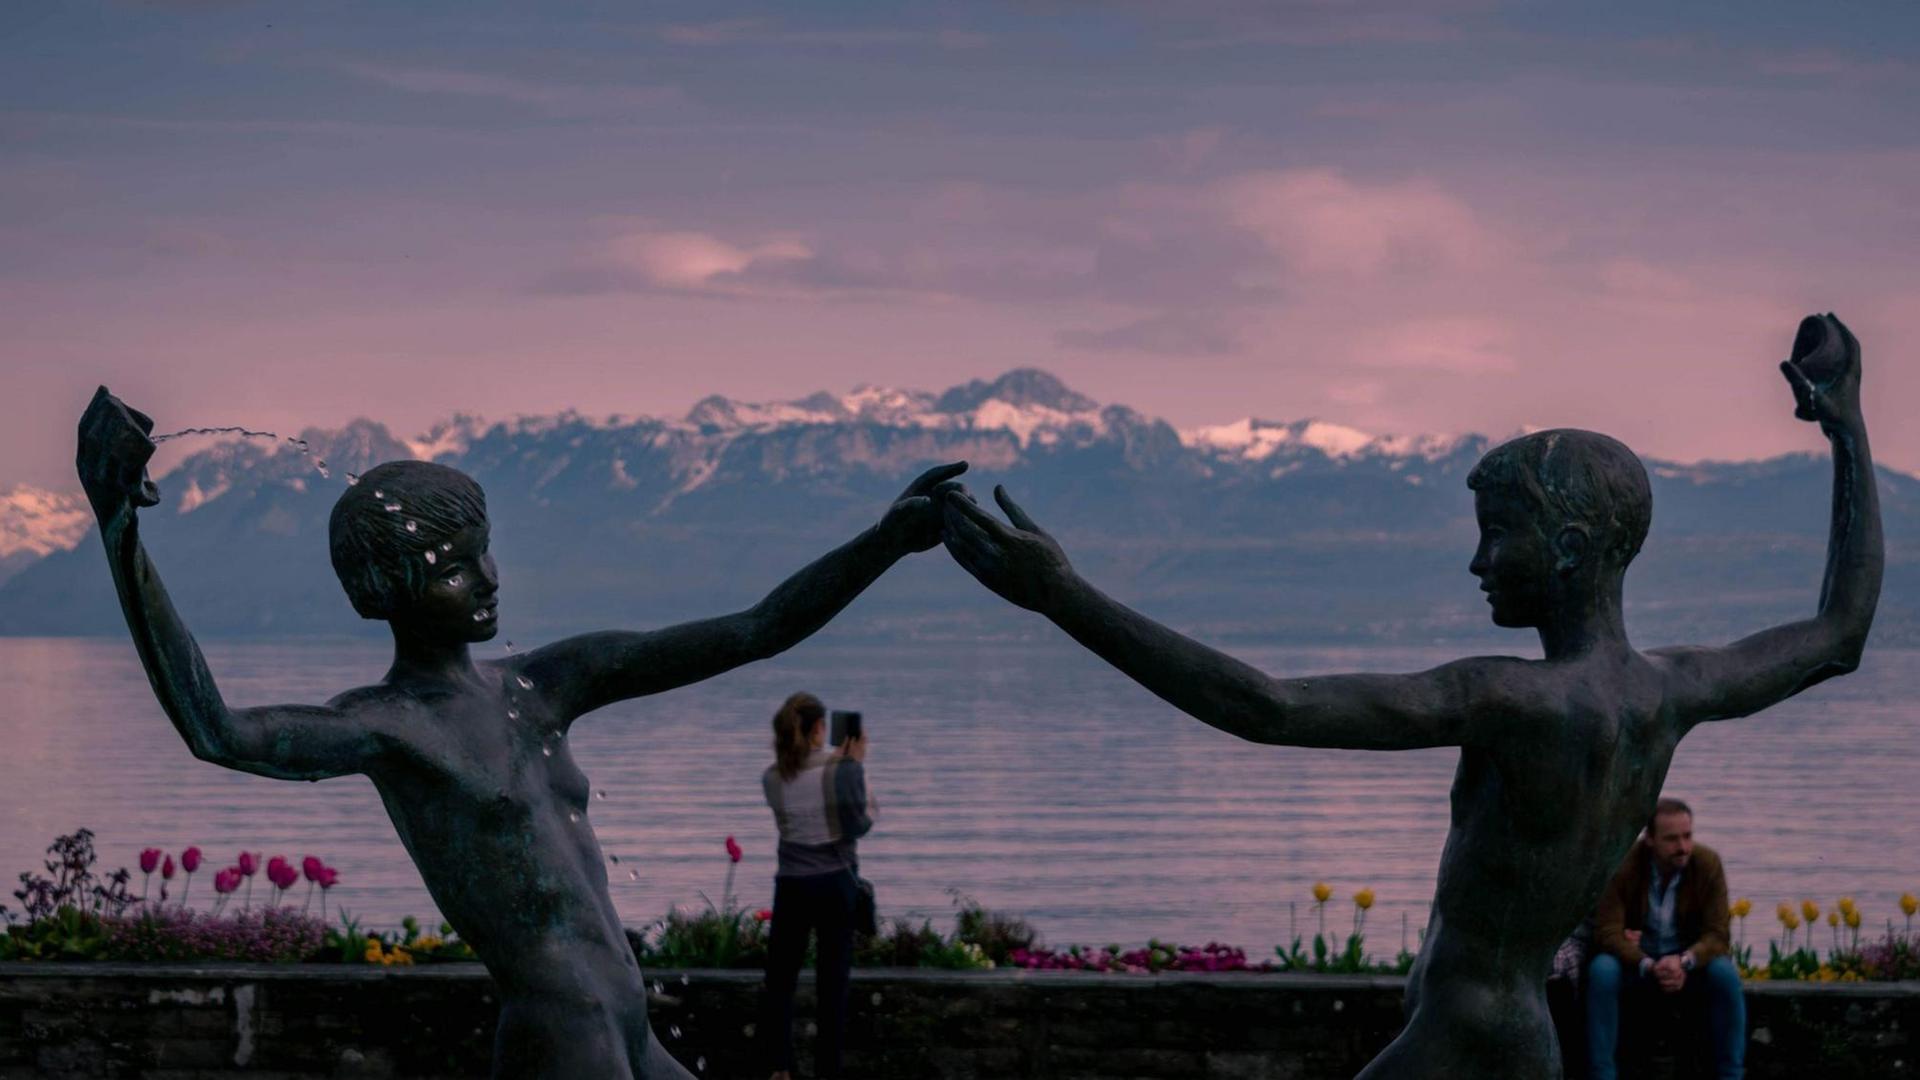 Zwei Brunnenfiguren reichen sich die Hände vor dem rosa Himmel, einem See und einem Alpenpanorama im Hintergrund.